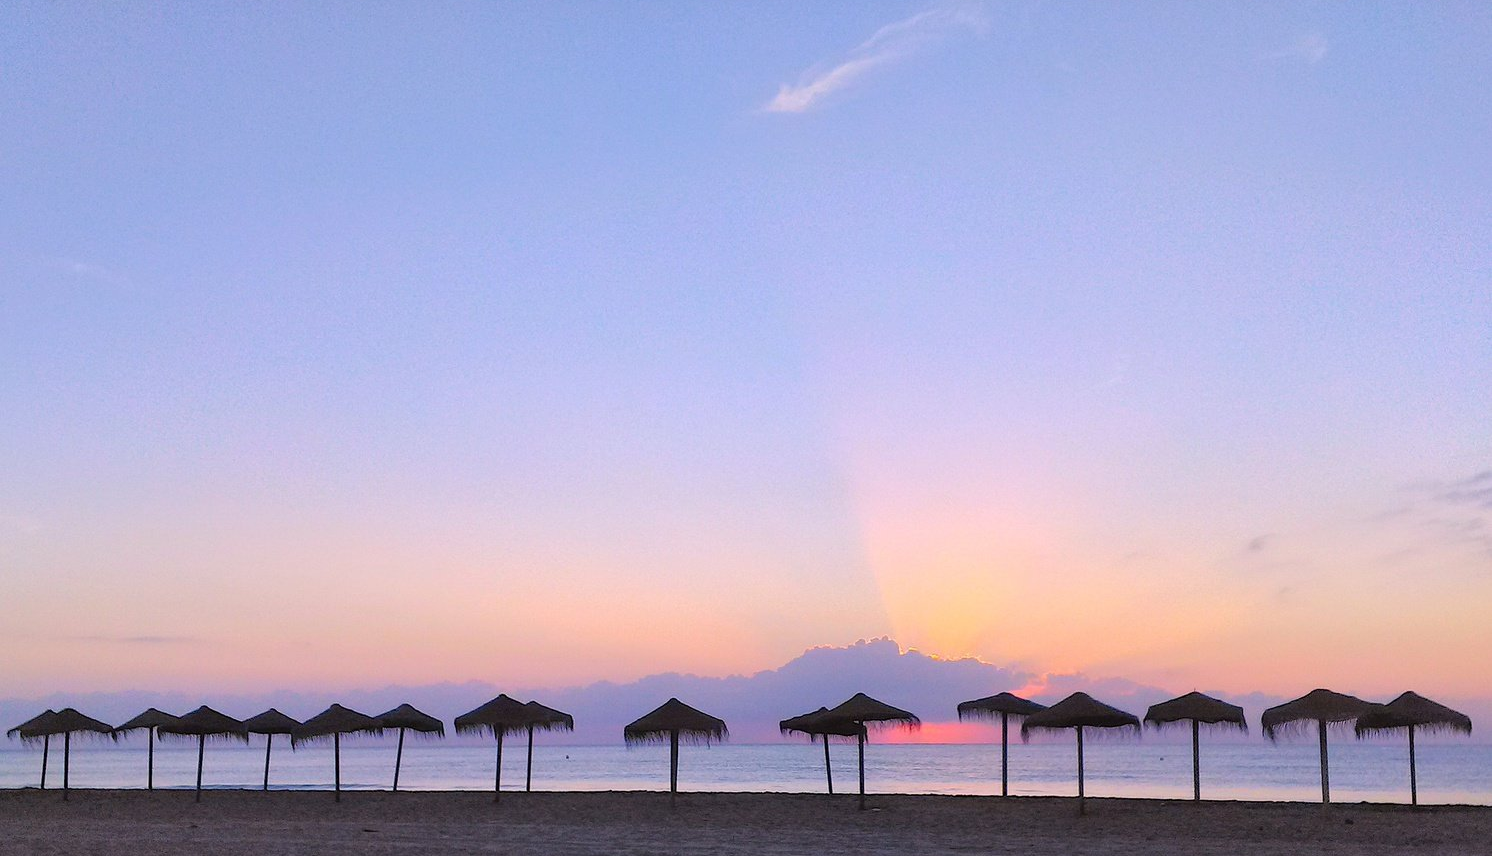 Una sola fila de sombrillas de paja en la costa al amanecer con un amanecer rosado tratando de brillar a través de las nubes rosadas